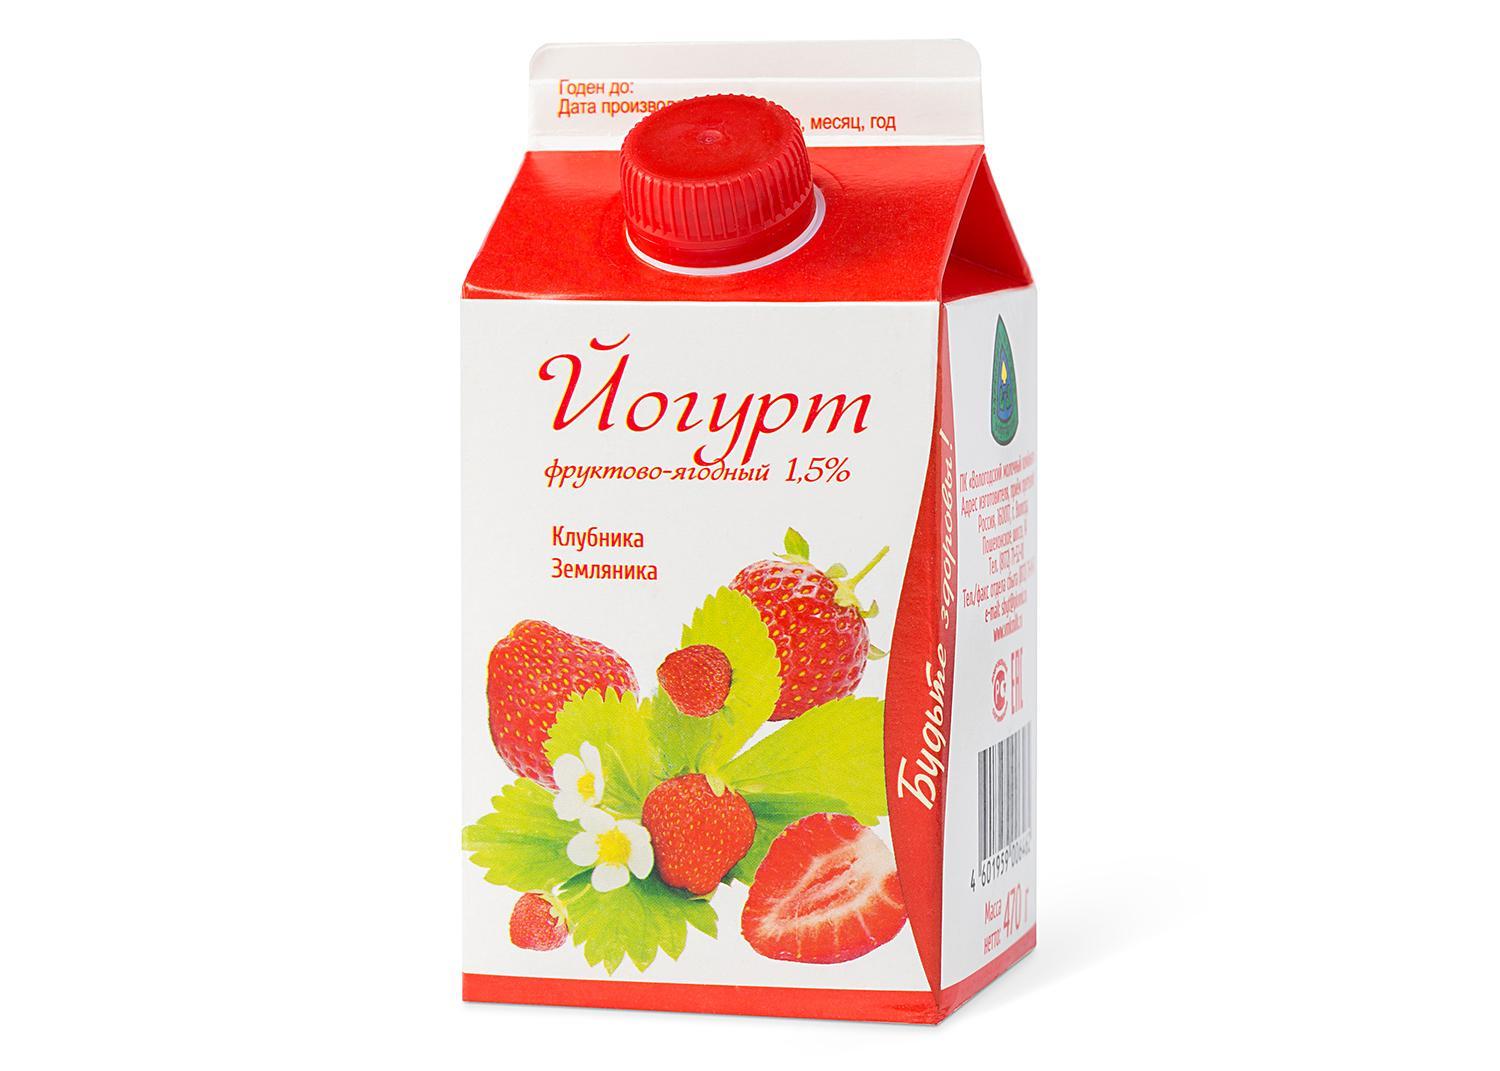 Йогурт фруктово-ягодный 1,5%, Вологодский МК, 470 гр, тетра-пак